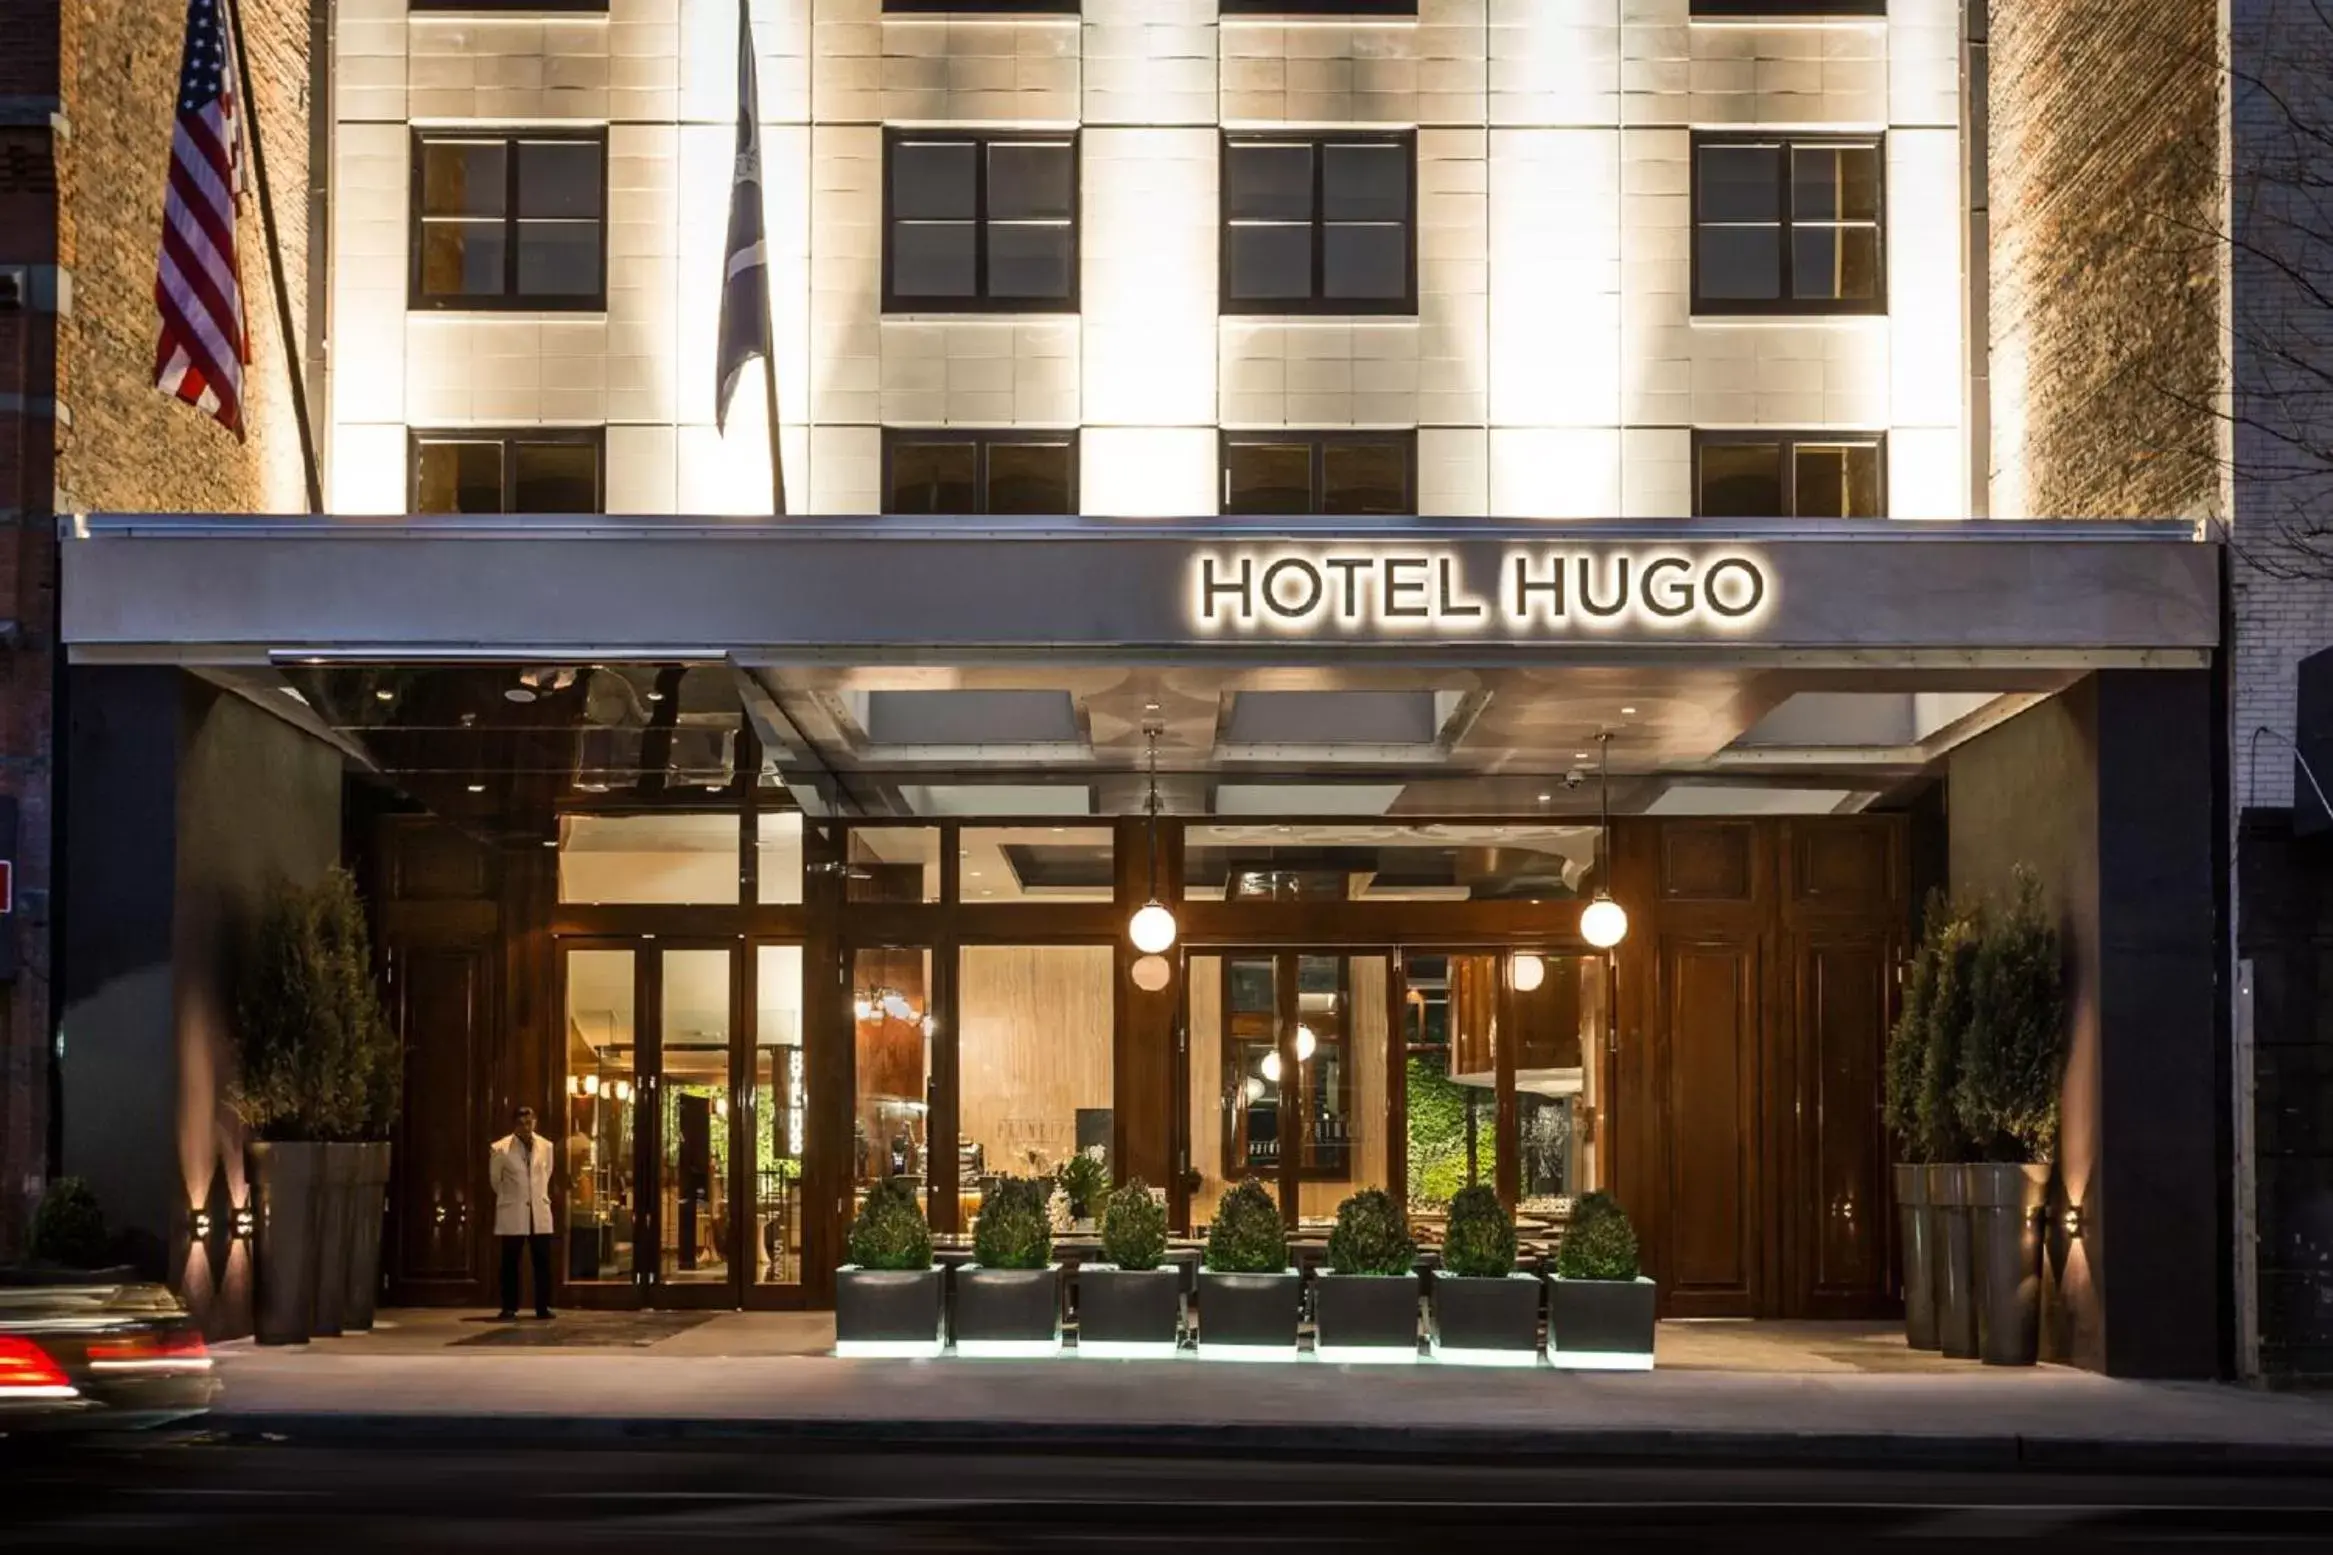 Facade/entrance in Hotel Hugo